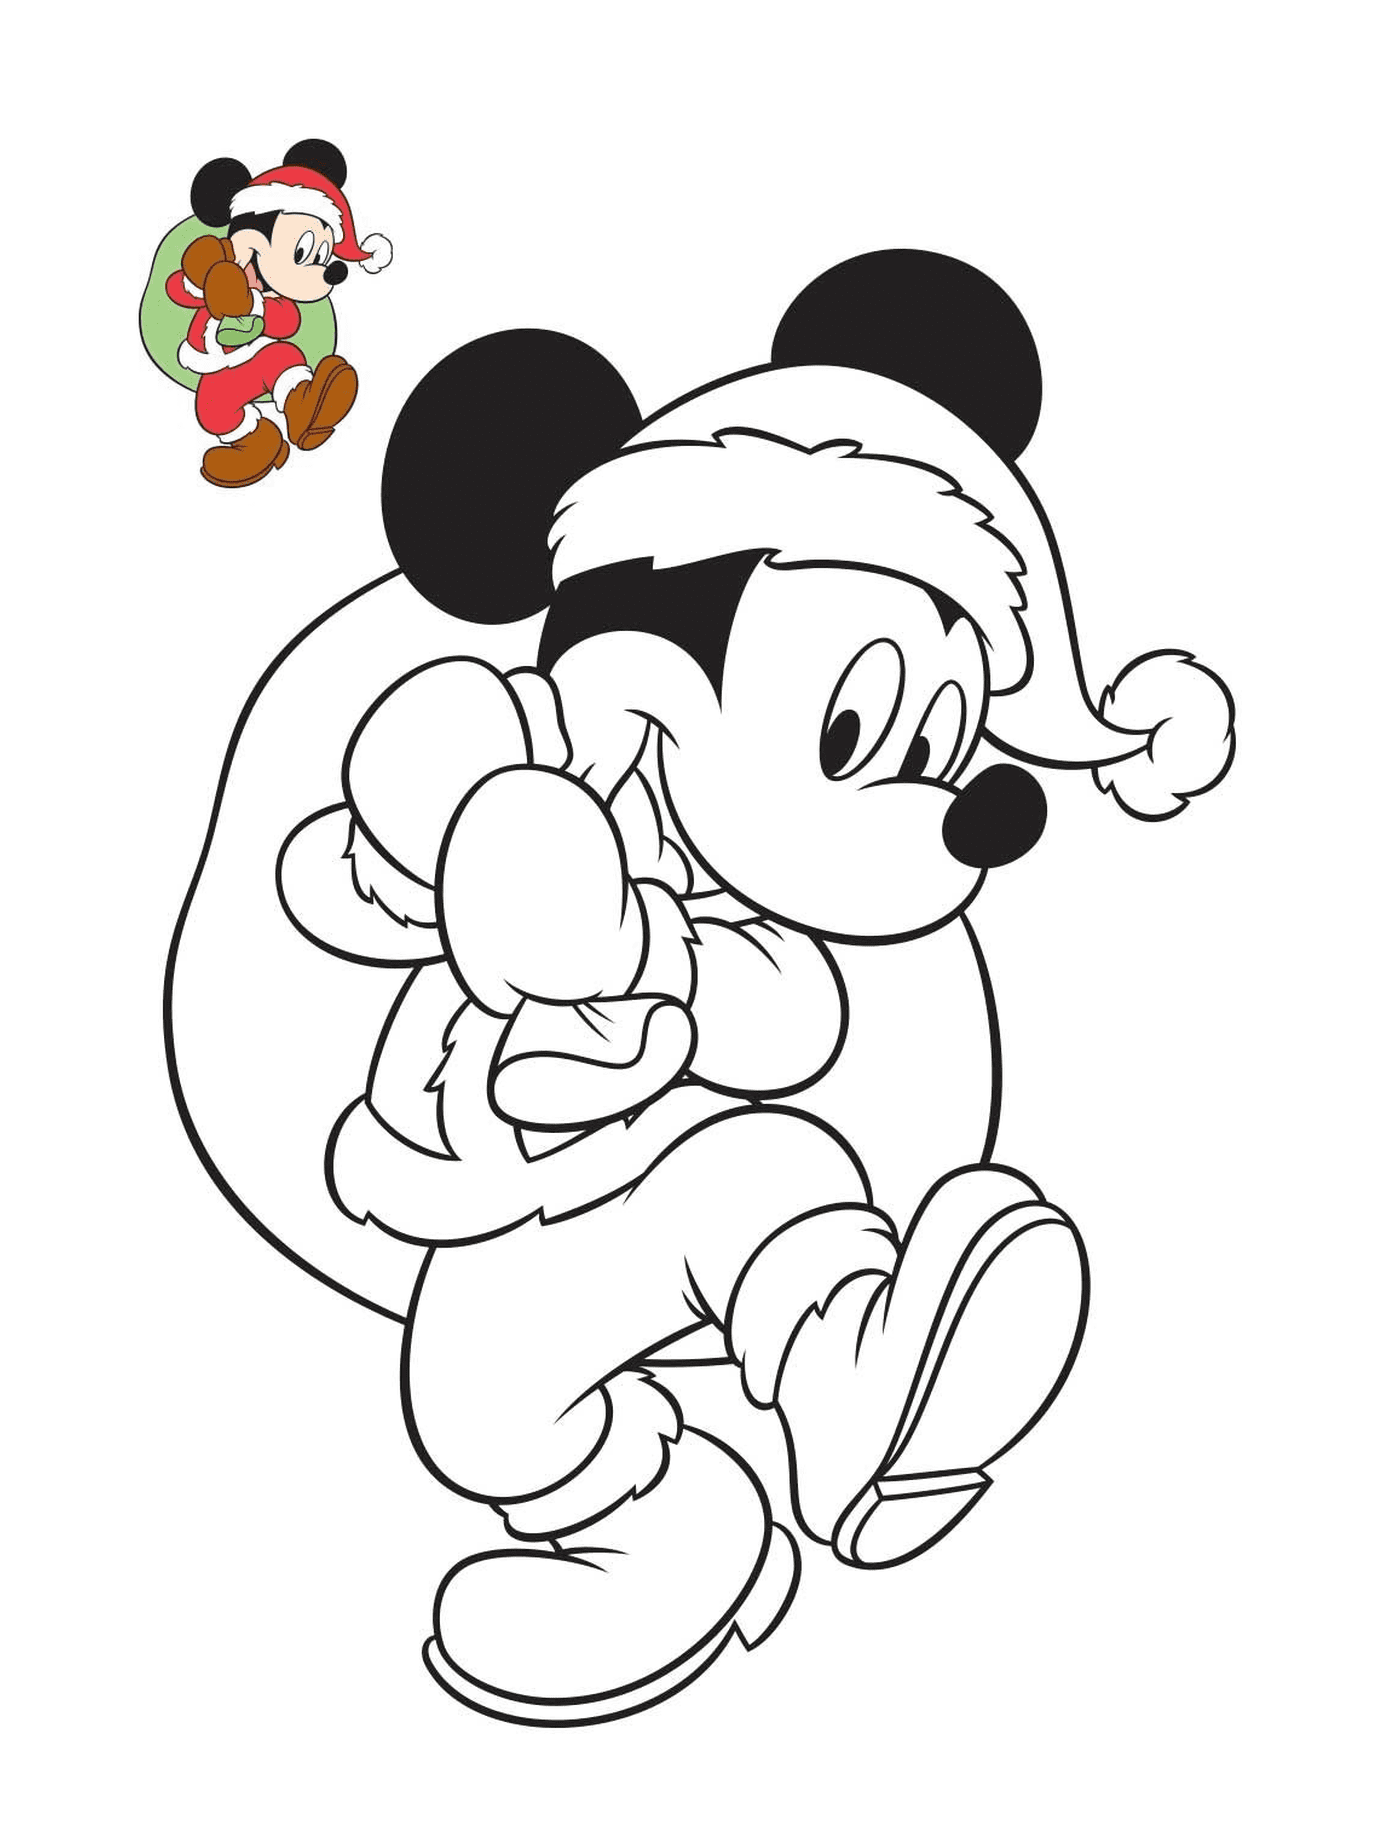  Mickey plays Santa Claus 